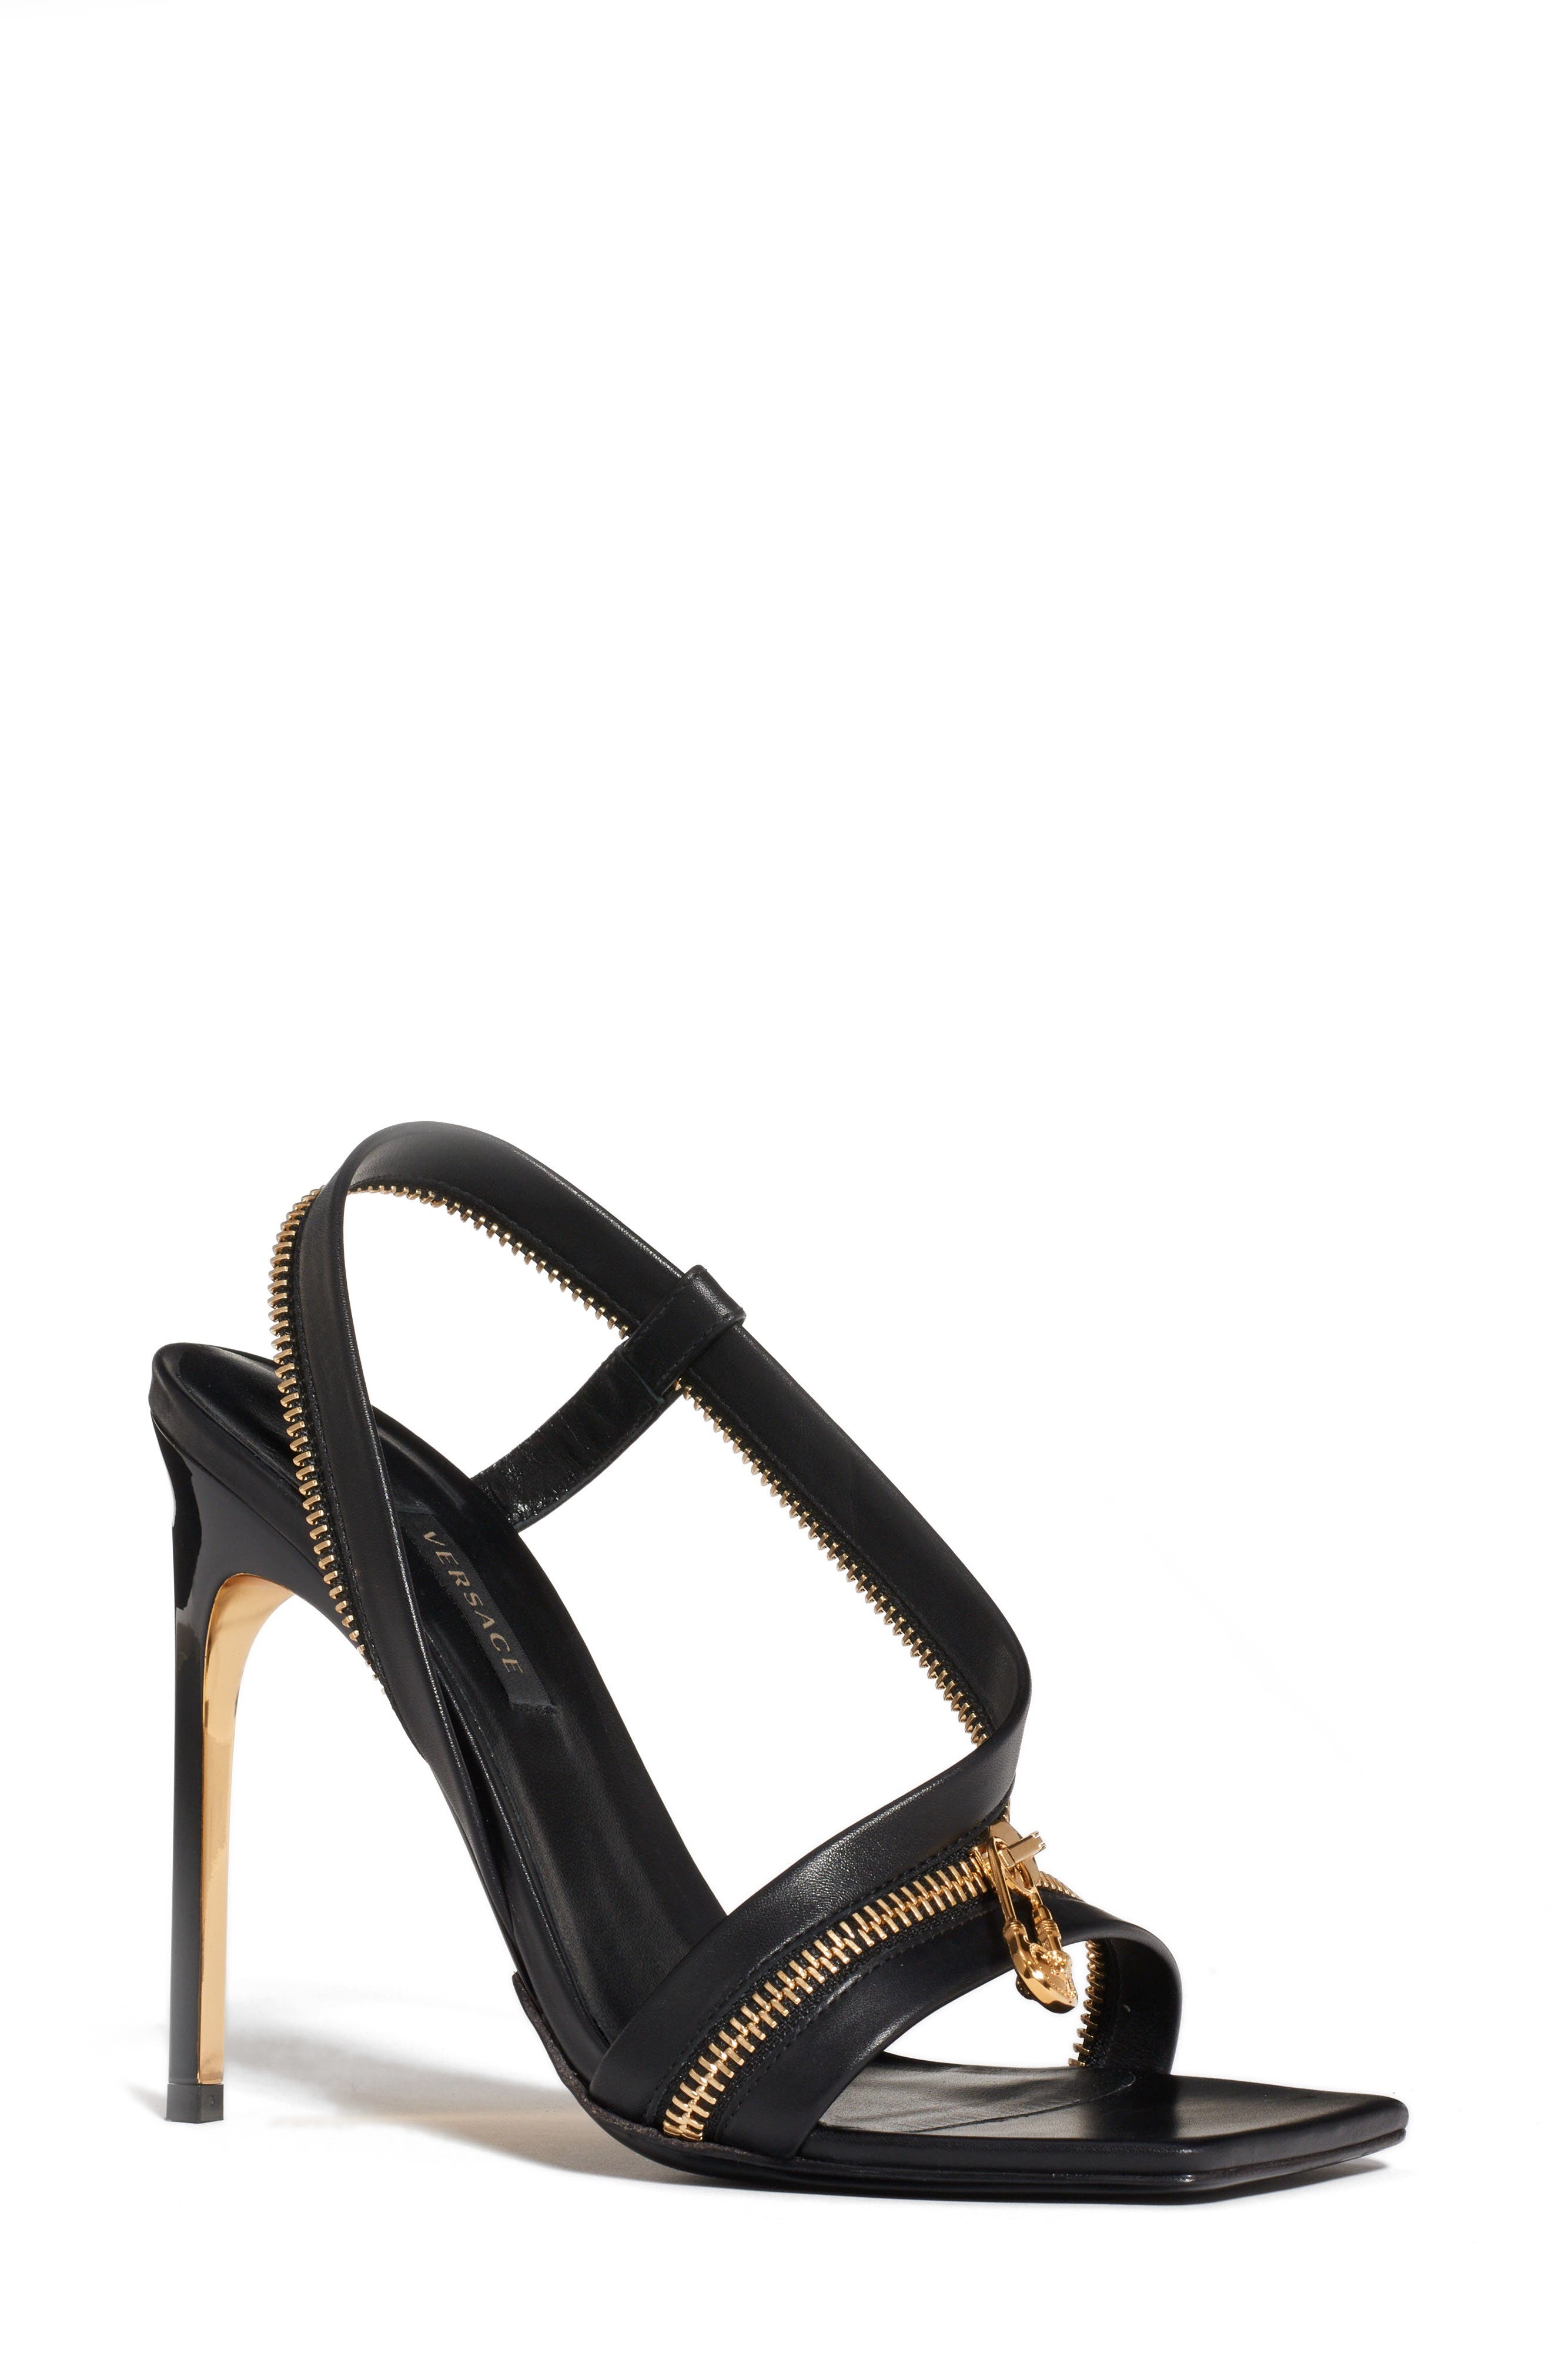 versace women heels